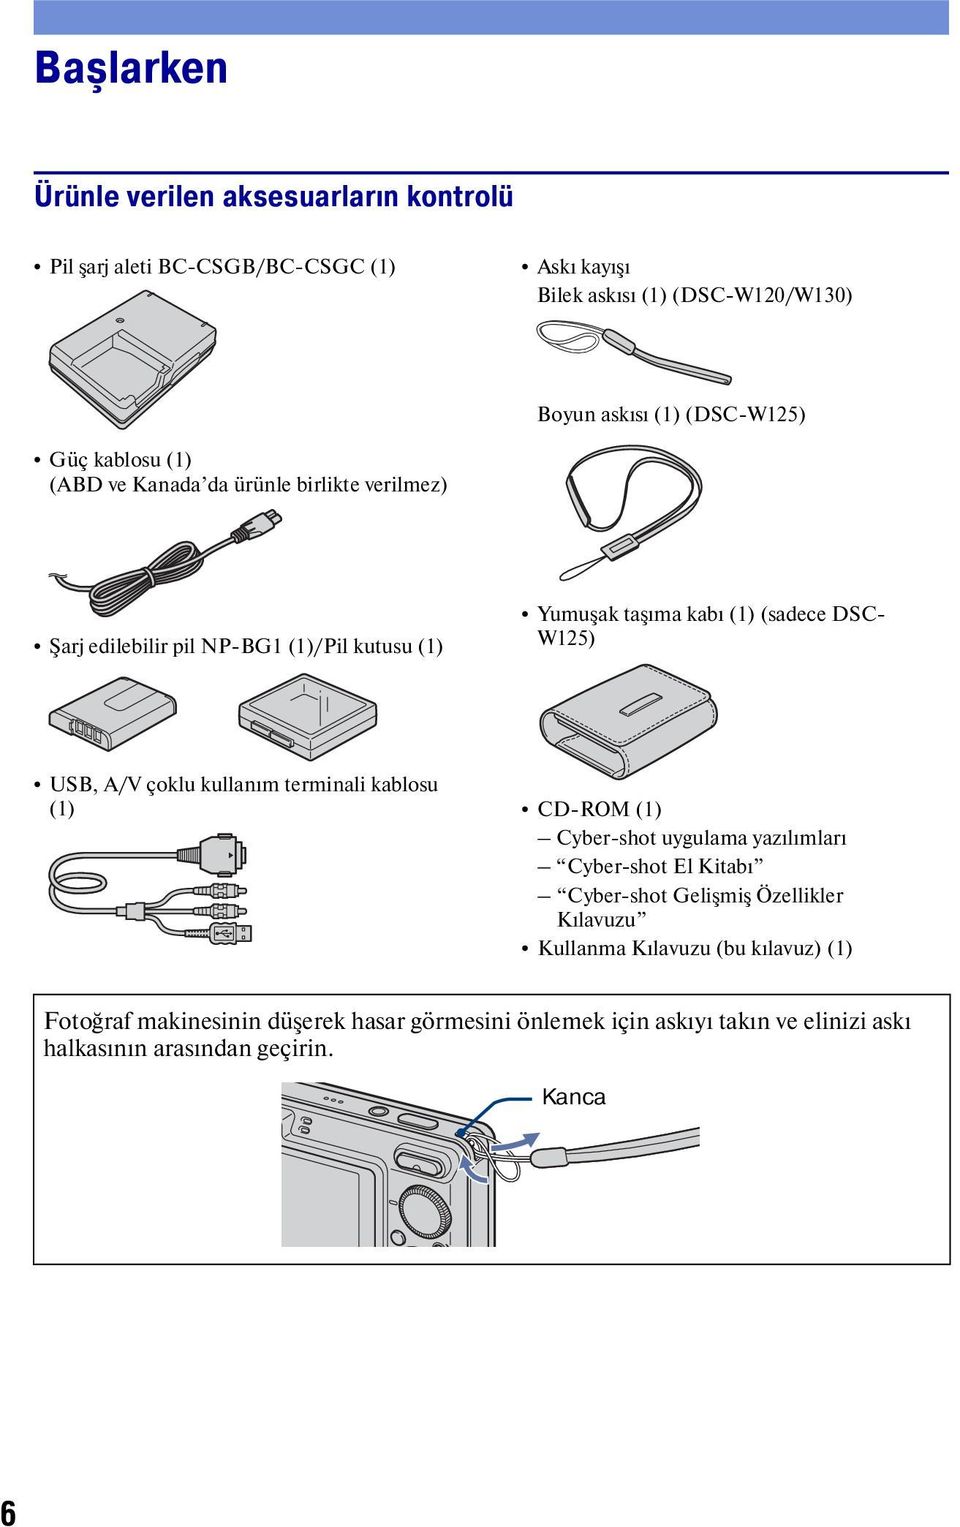 W125) USB, A/V çoklu kullanım terminali kablosu (1) CD-ROM (1) Cyber-shot uygulama yazılımları Cyber-shot El Kitabı Cyber-shot Gelişmiş Özellikler